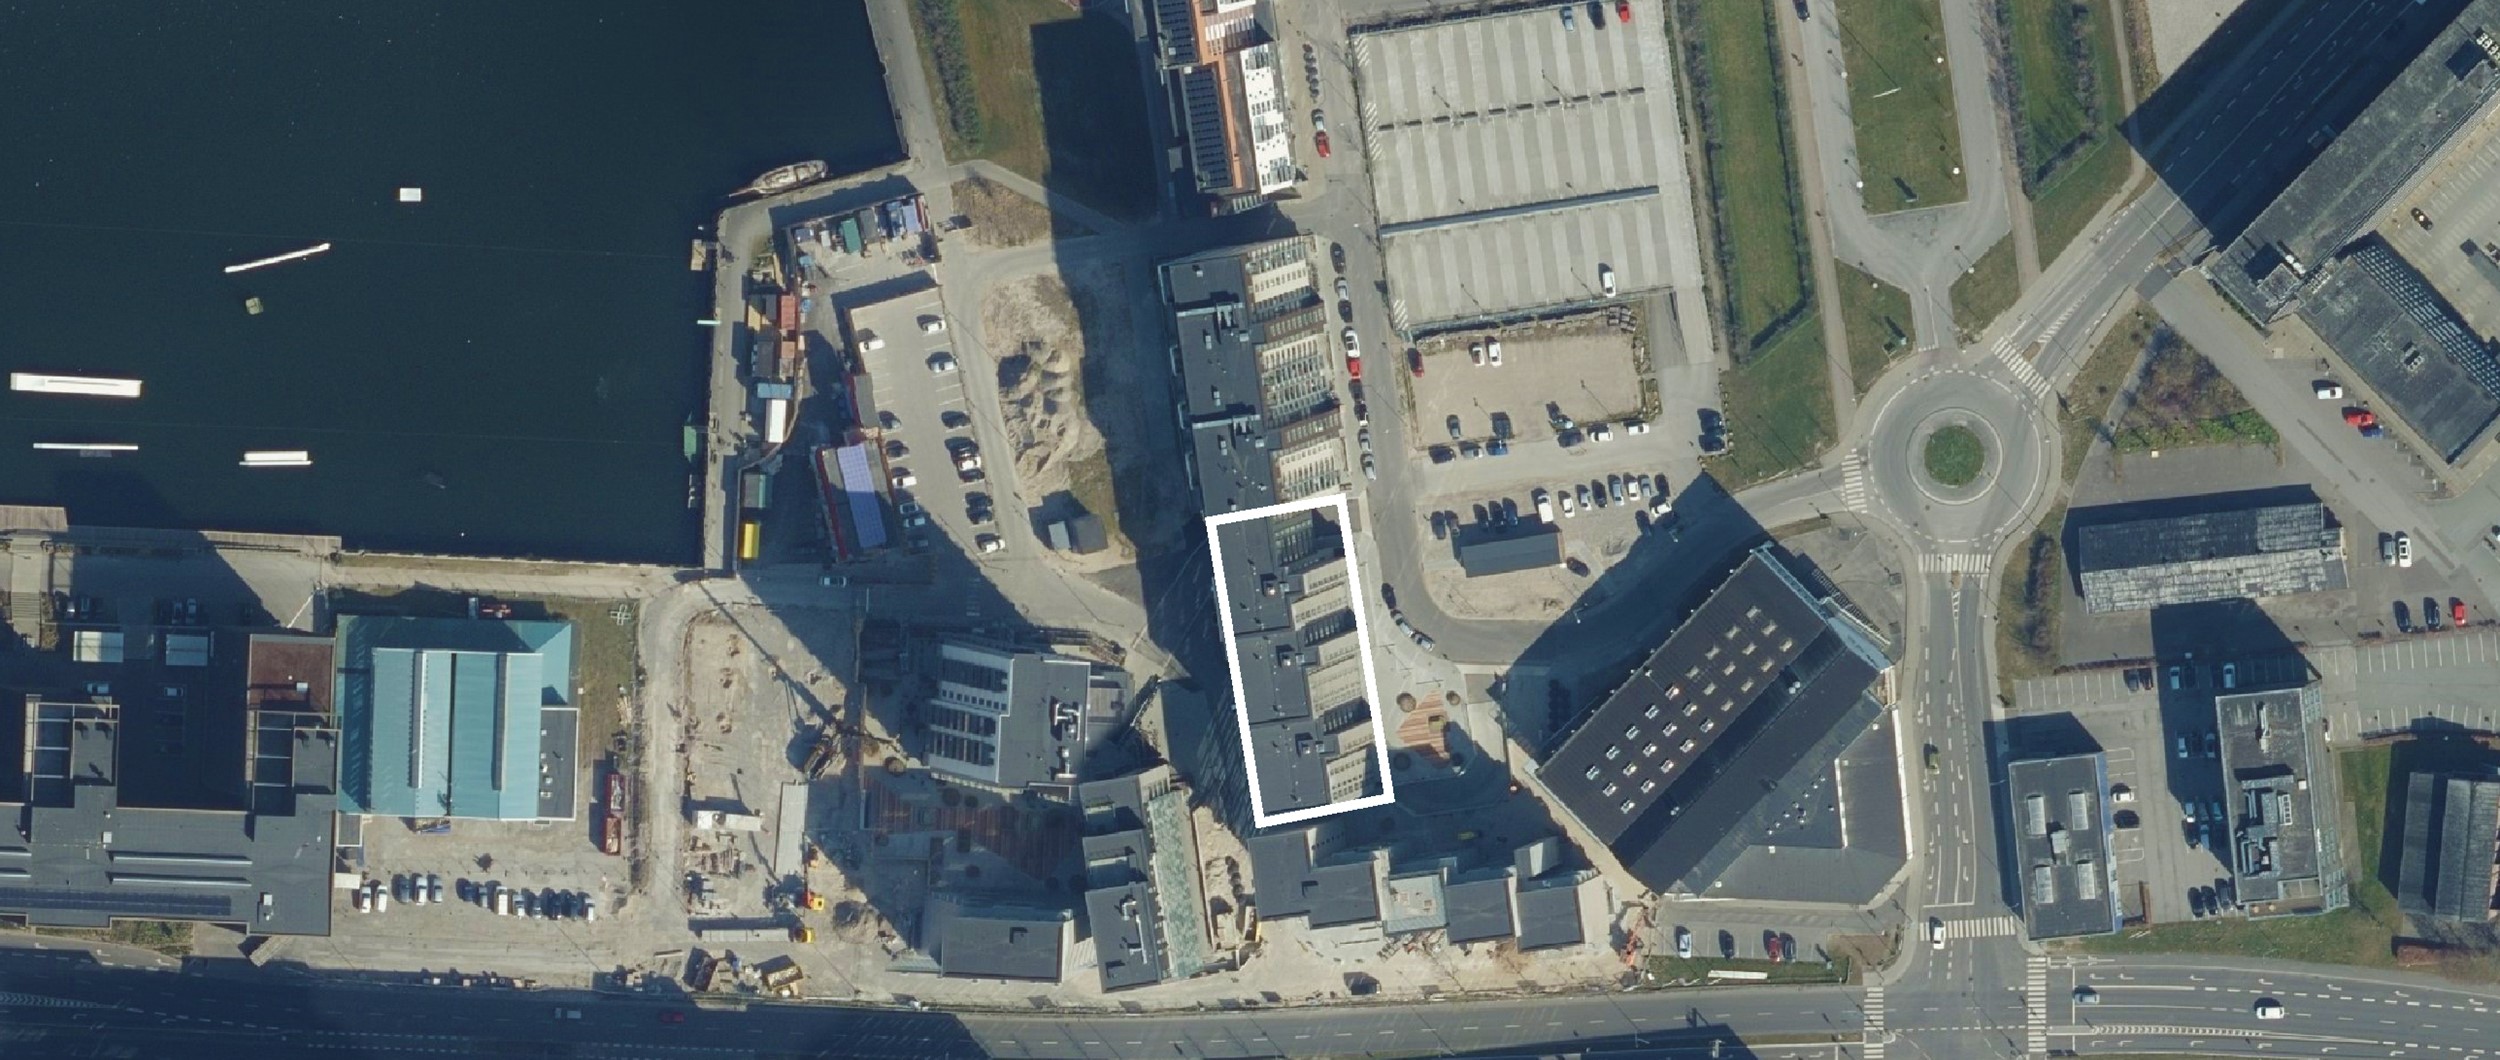 Det tidligere industriområder omkring Østre Havnebassin i Aalborg, er de sidste par år blevet omdannet til en ny bydel med forskellige typer boliger.